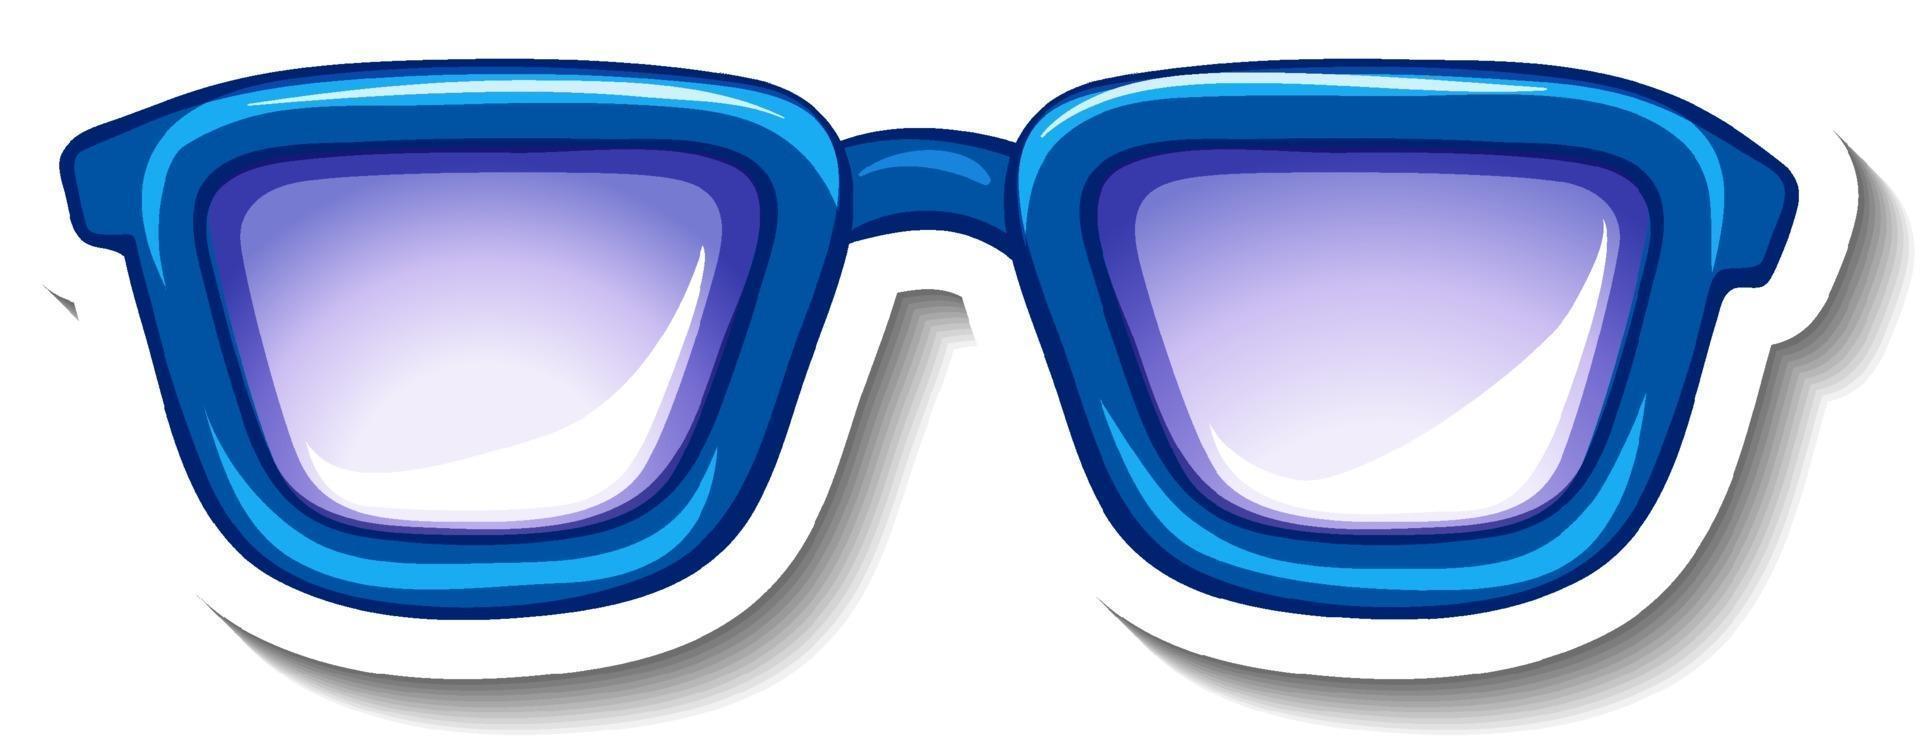 um modelo de adesivo com óculos azuis vetor